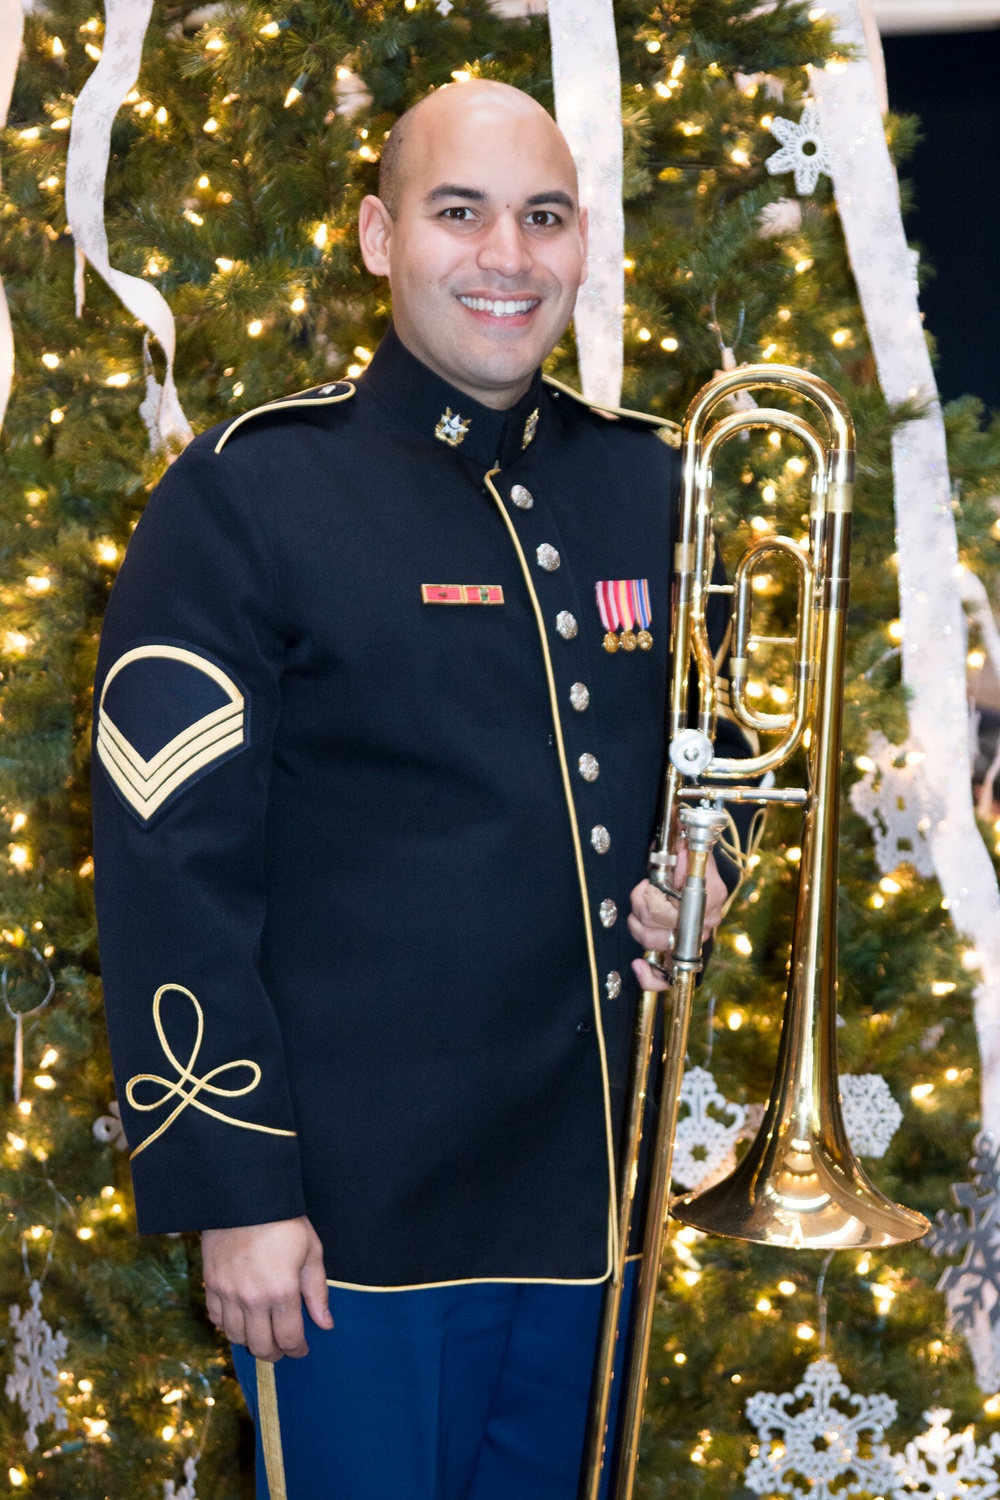 Christmas was every day for TUSAB trombonist Barranco